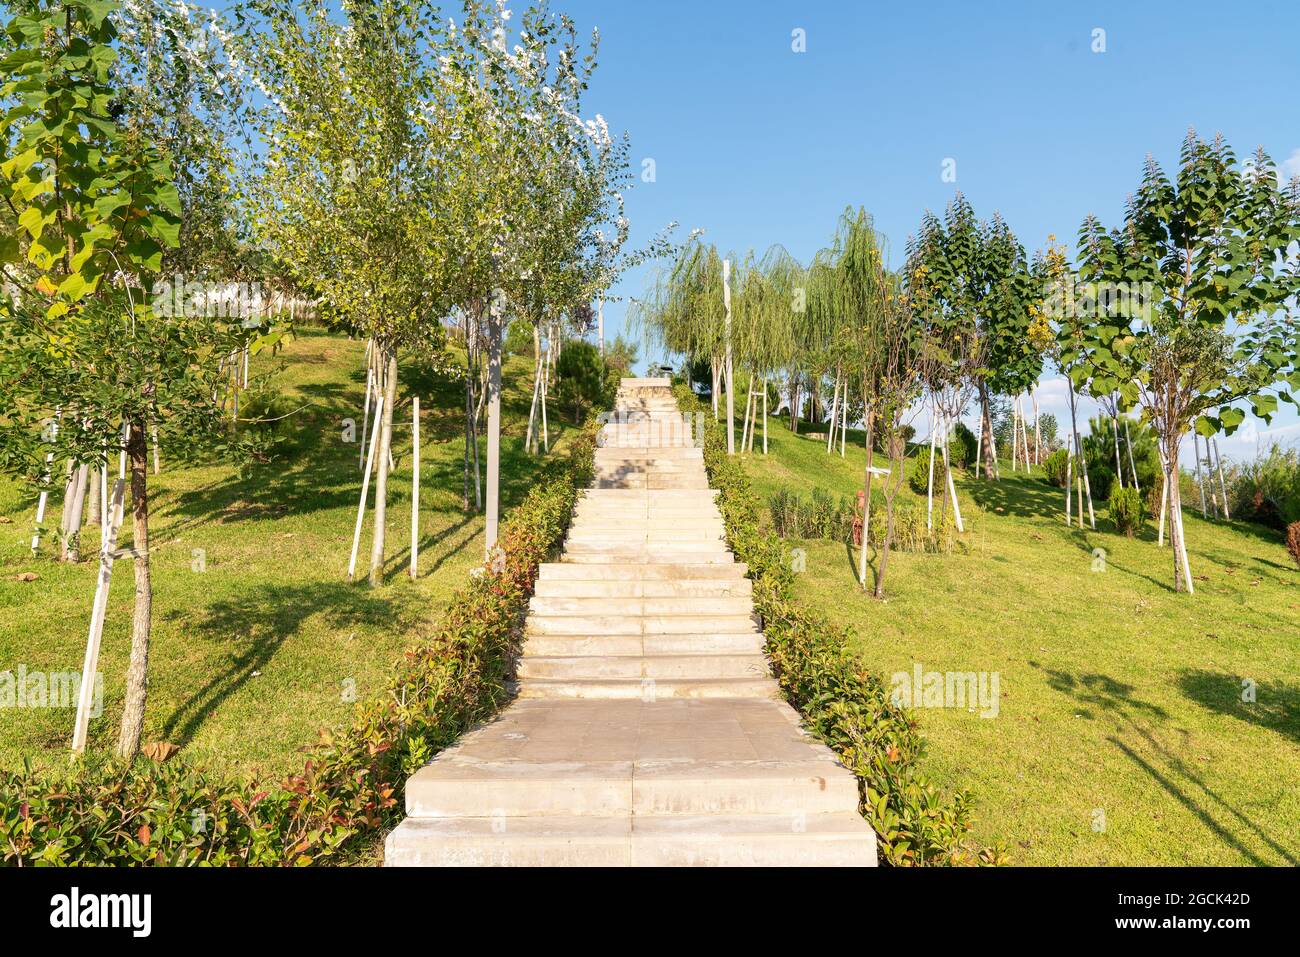 Eine schöne Treppe und Gehweg, Weg neben dem ruhigen öffentlichen Park und Garten. Hochwertige Fotos Stockfoto